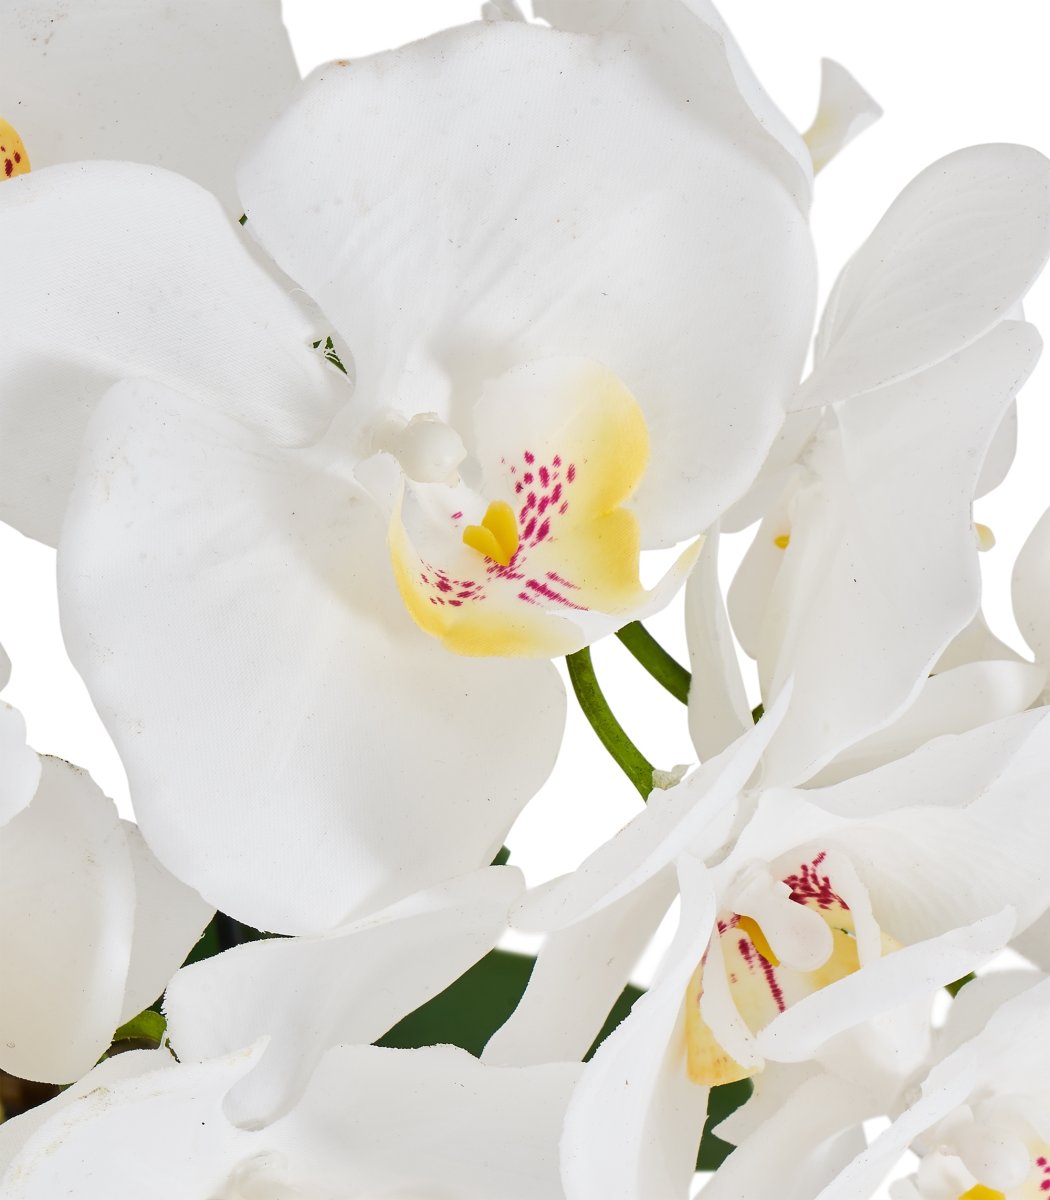 Orkide, 42 cm, Hvid